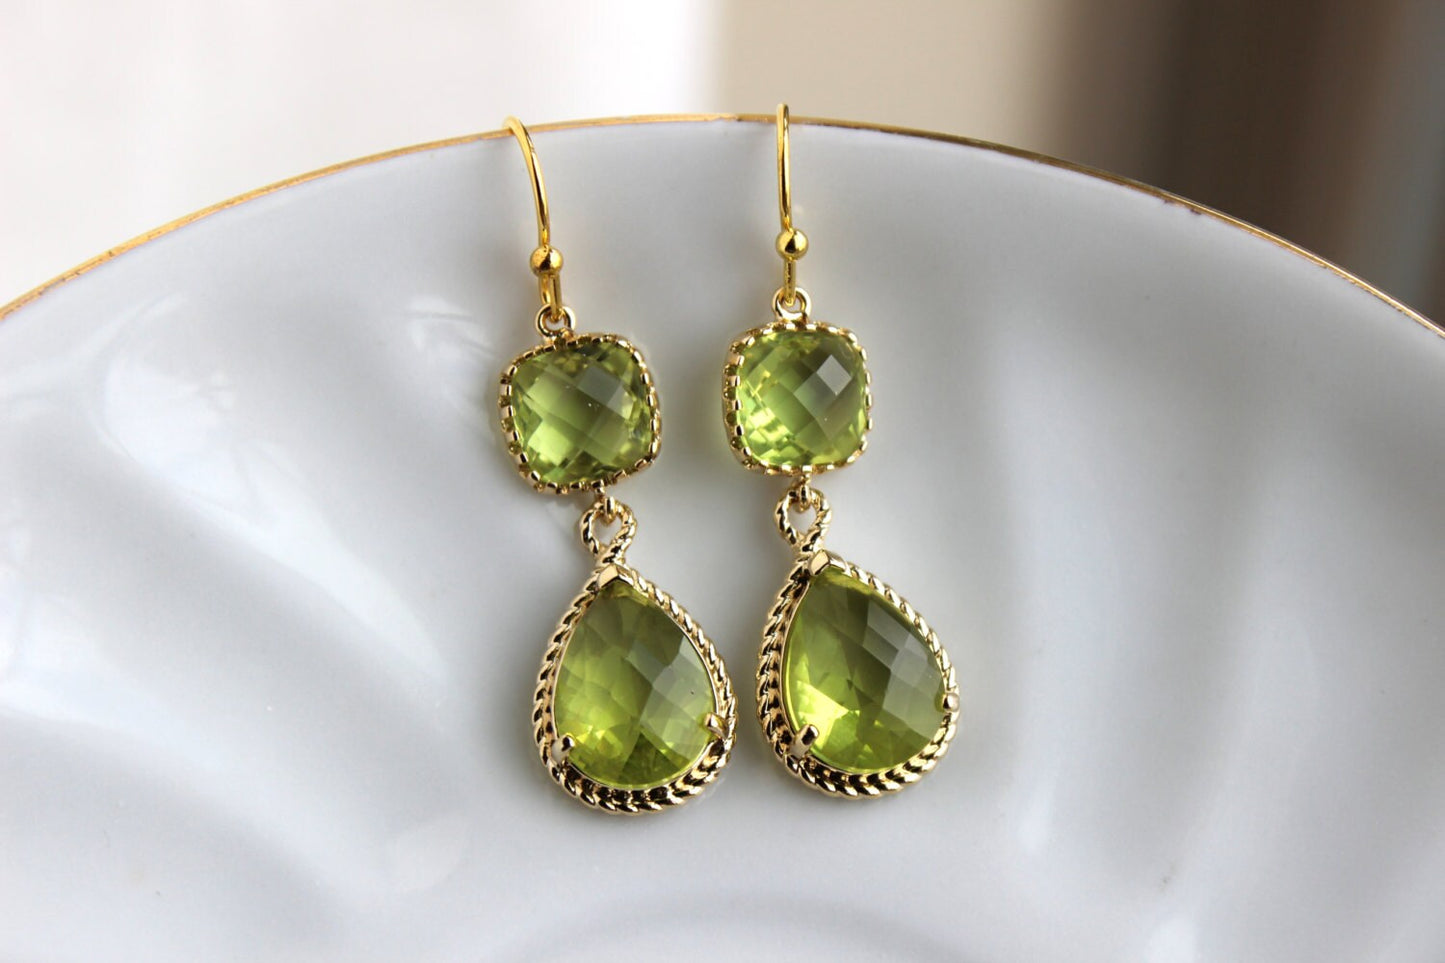 Gold Peridot Earrings Apple Green Two Tier Earrings - Peridot Jewelry - Chartreuse Earrings - Bridesmaid Jewelry - Wedding Jewelry Earrings